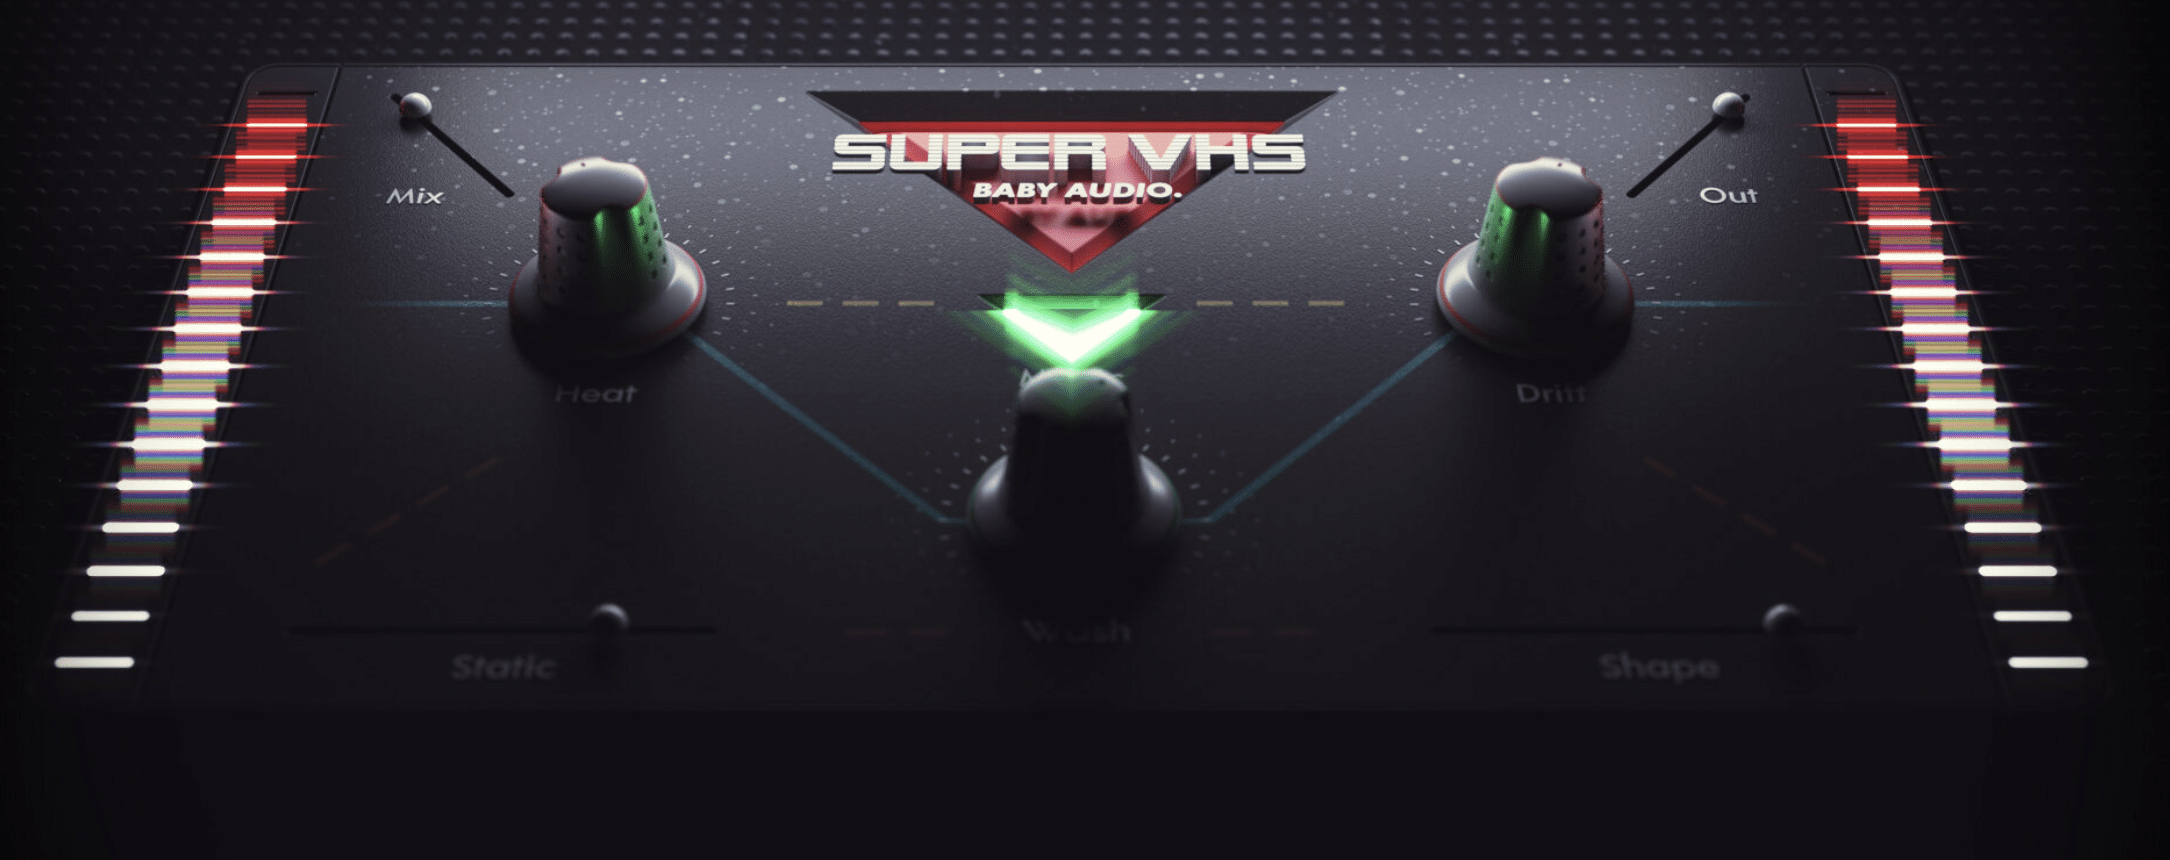 Super VHS 2 - Unison